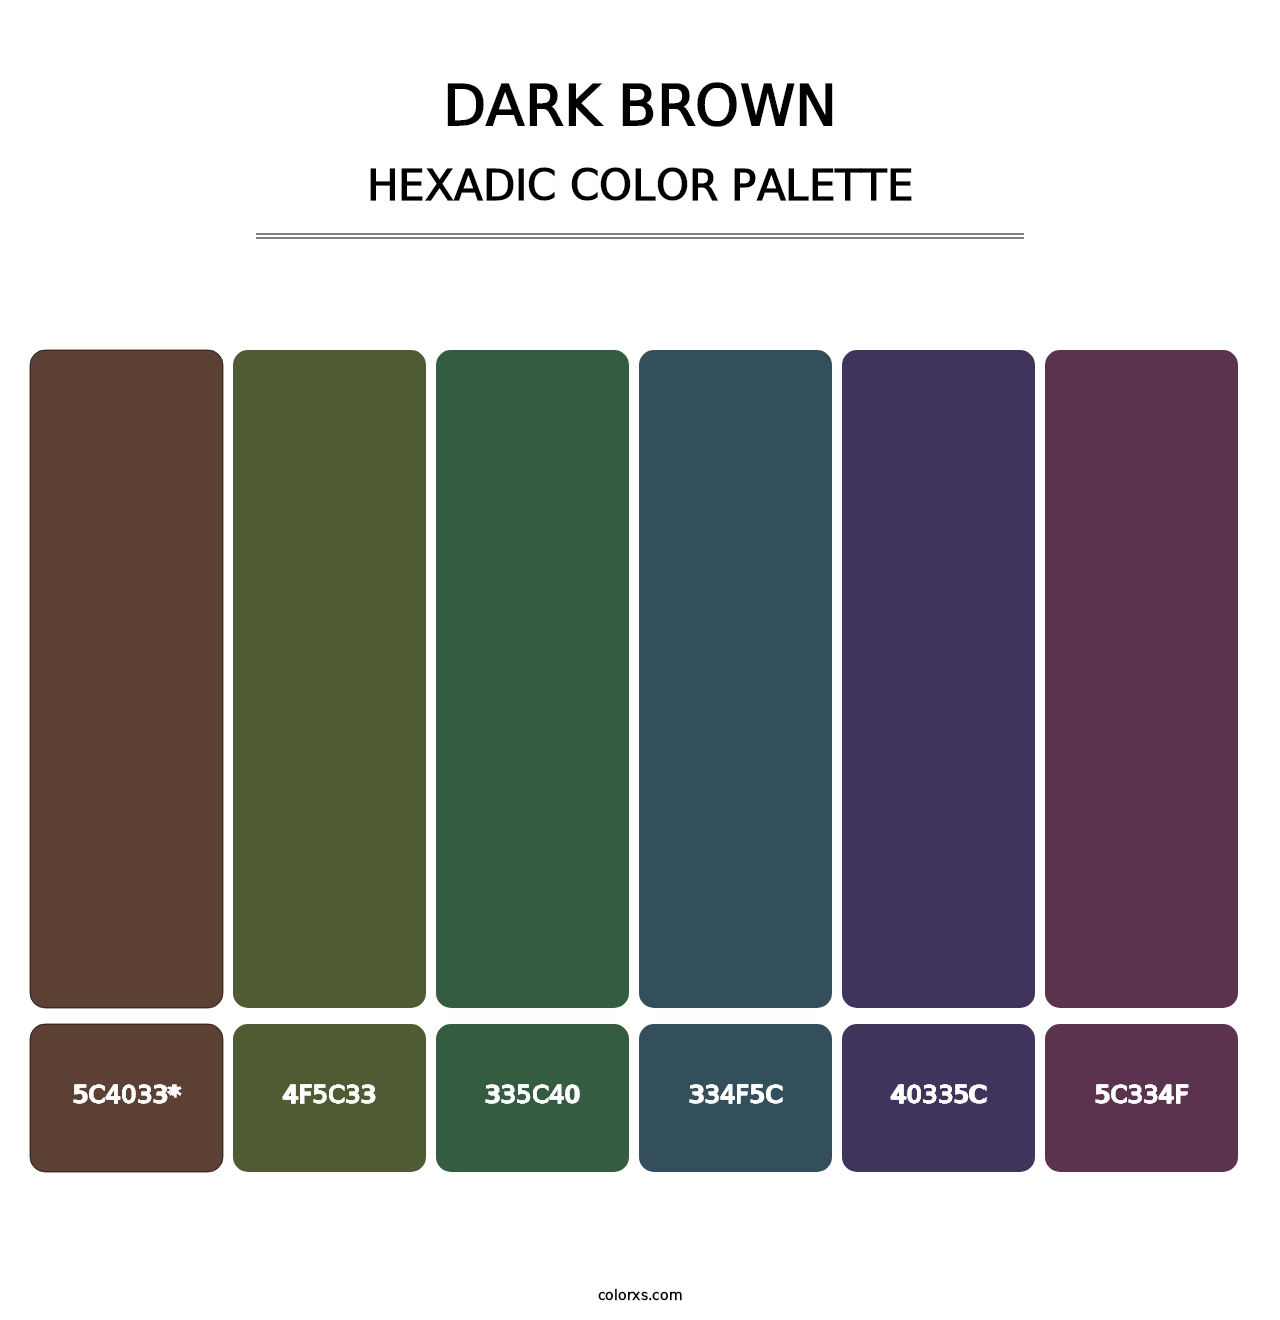 Dark Brown - Hexadic Color Palette